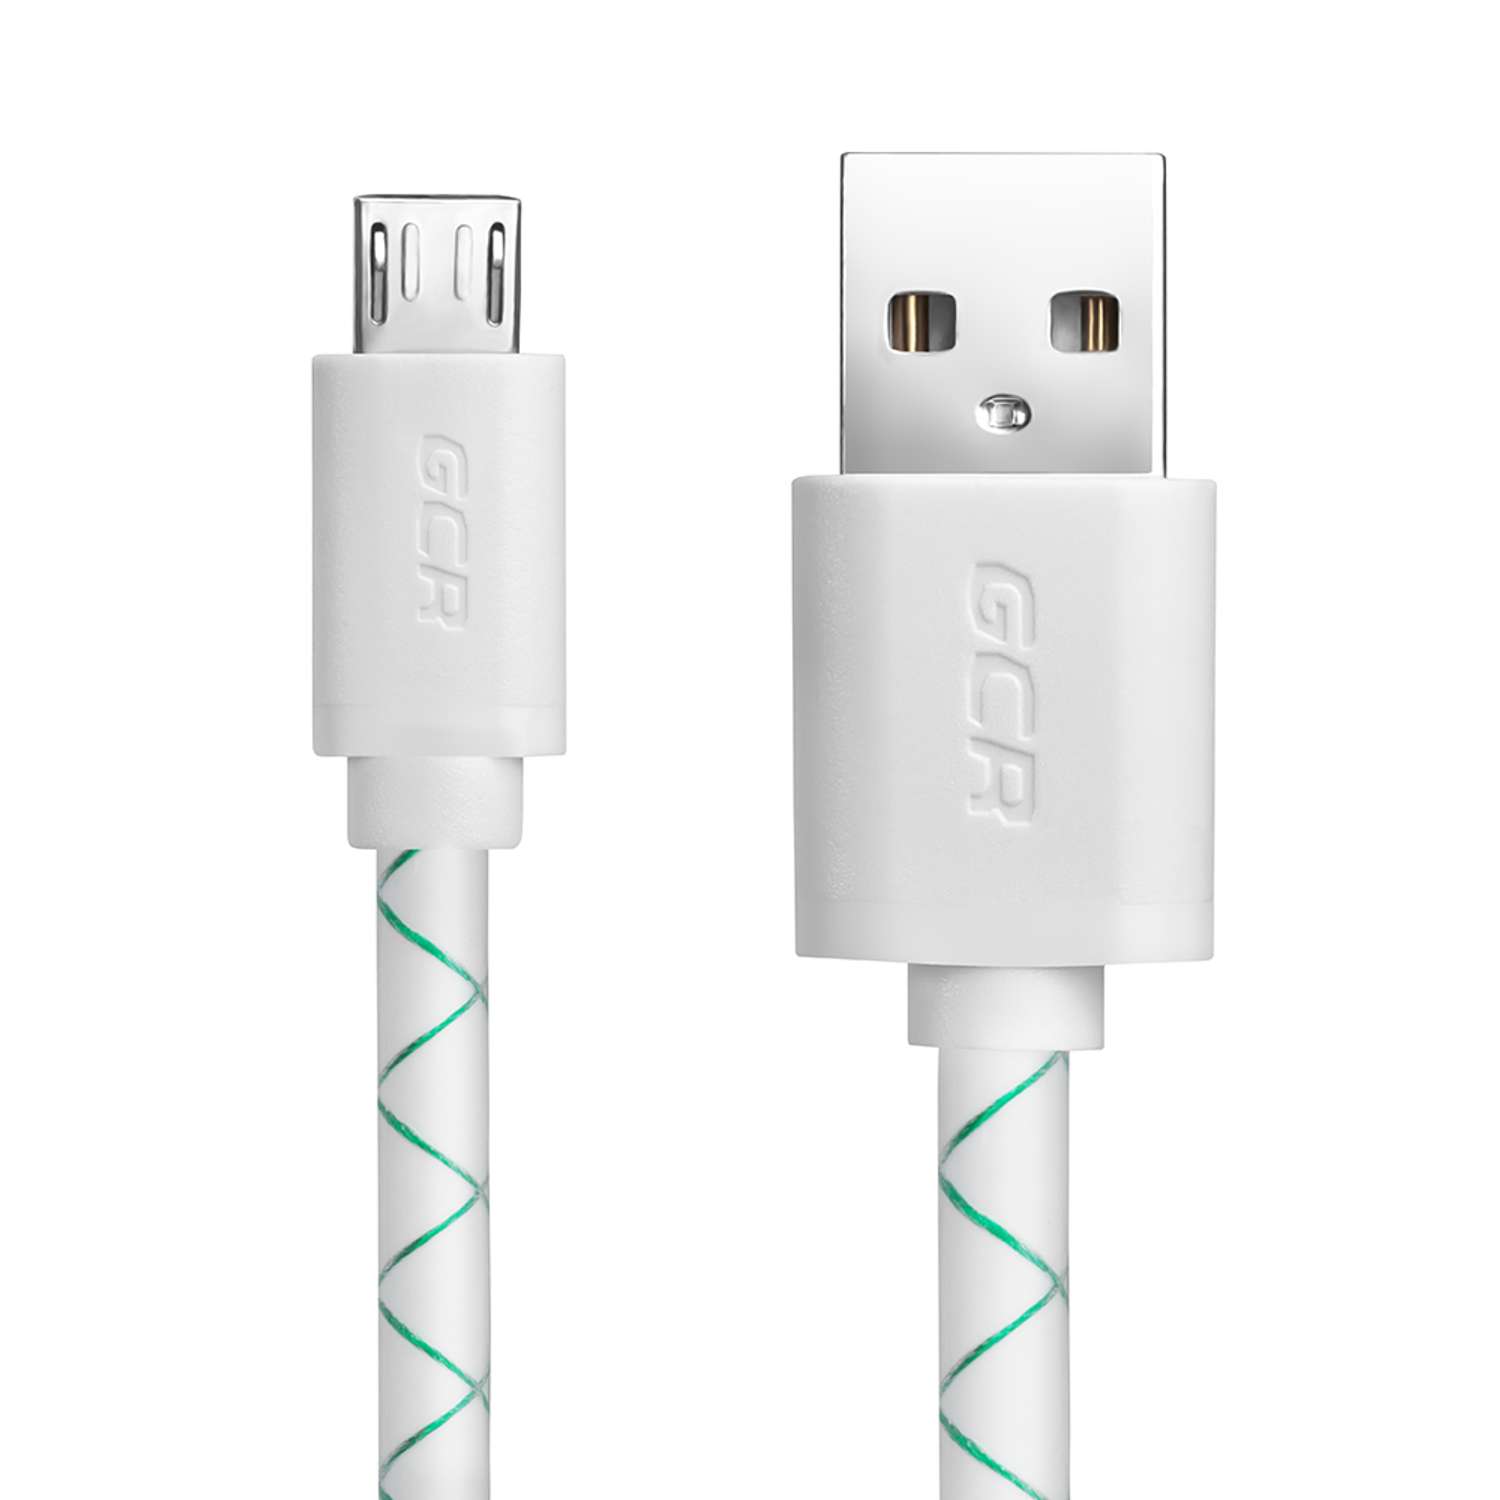 Кабель USB GCR 2.0m MicroUSB быстрая зарядка в бело-зеленой оболочке GCR-UA9MCB3-BD-2.0m - фото 2